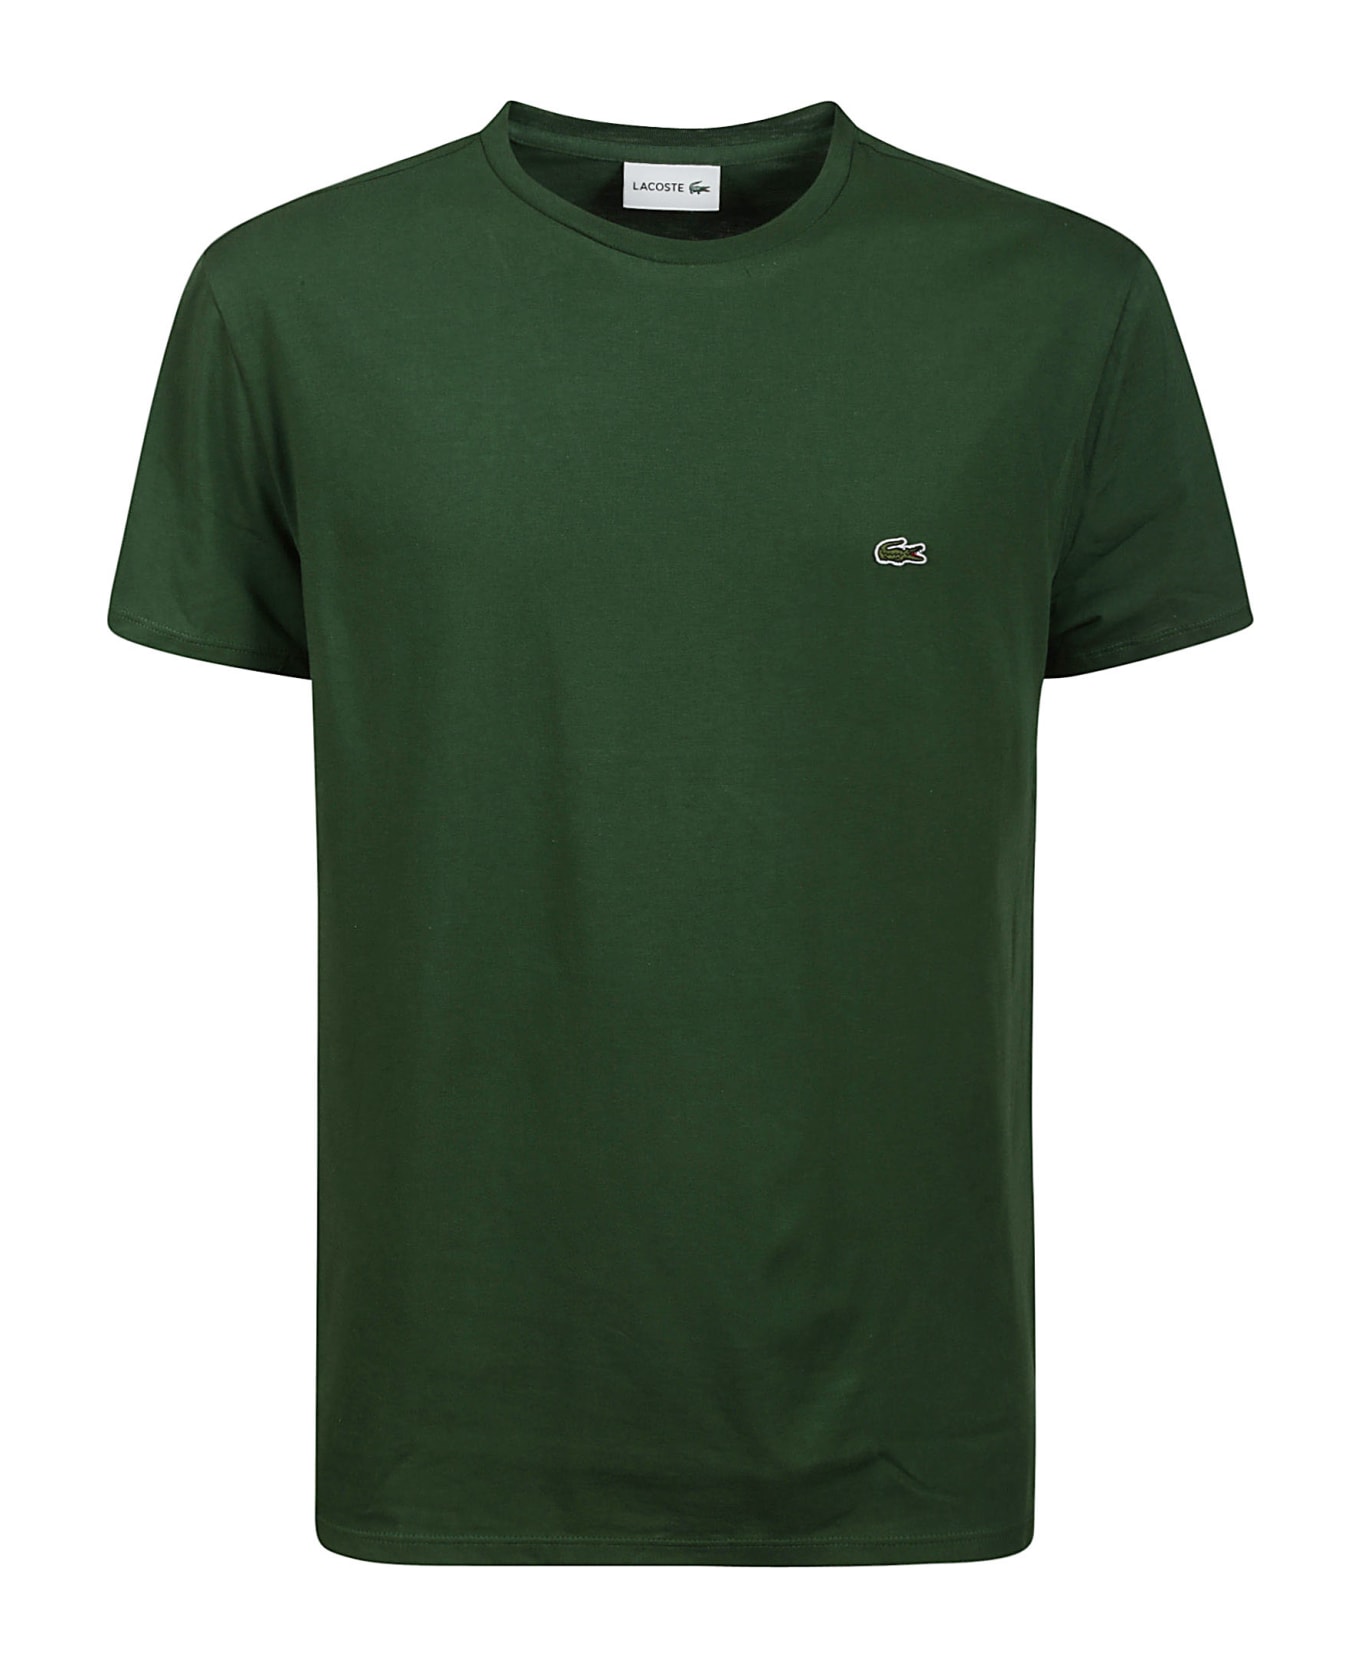 Lacoste Tshirt - Green